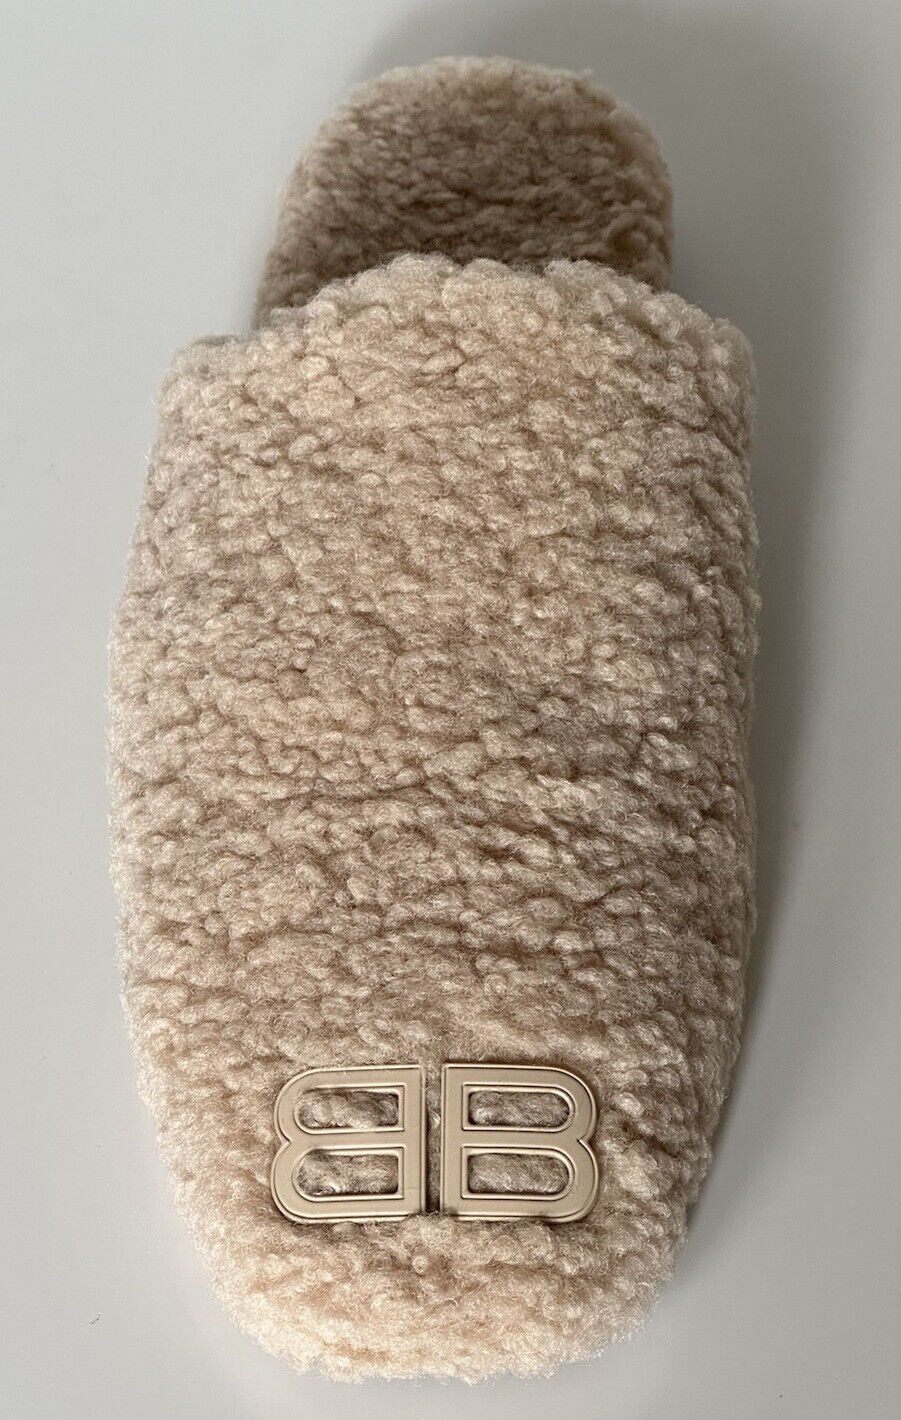 СИБ 750 долларов США Balenciaga Мужские сабо из искусственной овчины бежевого цвета 10 США (43 евро) IT 67256 